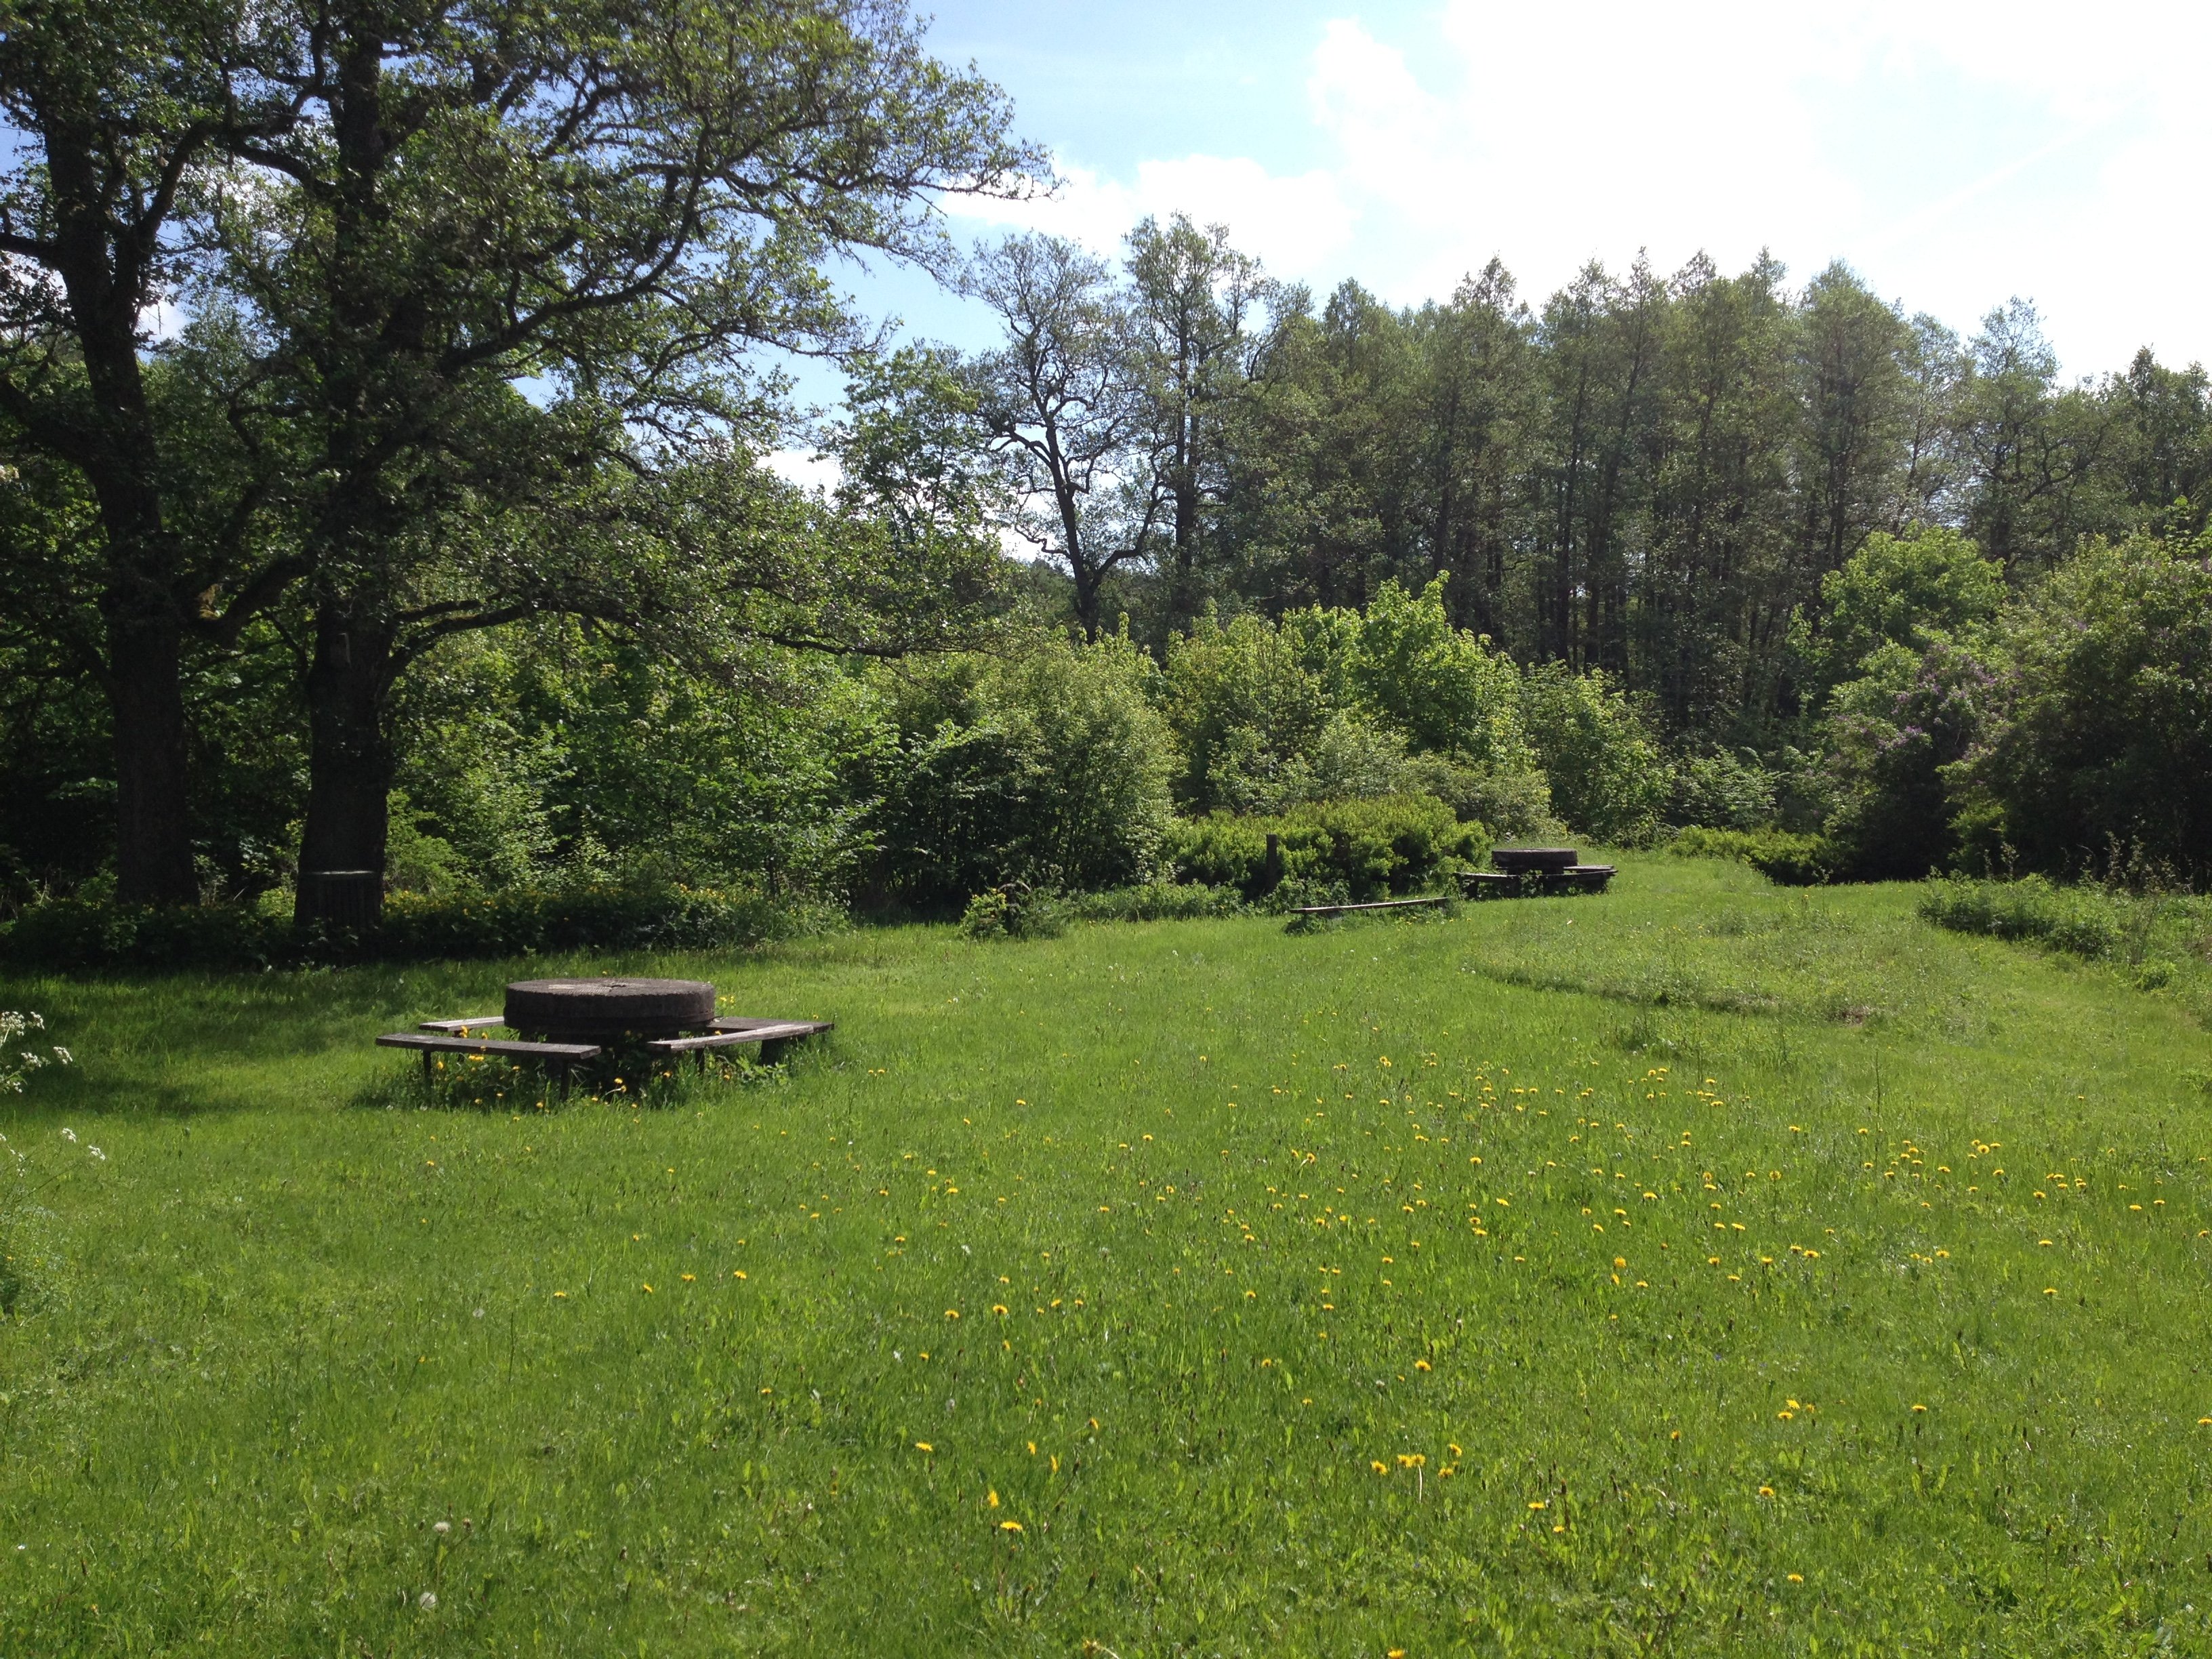 Öppen gräsmark med grillplats, bärnkbord och sittbänkar. Runtom rastplatsen finns många buskar och träd.